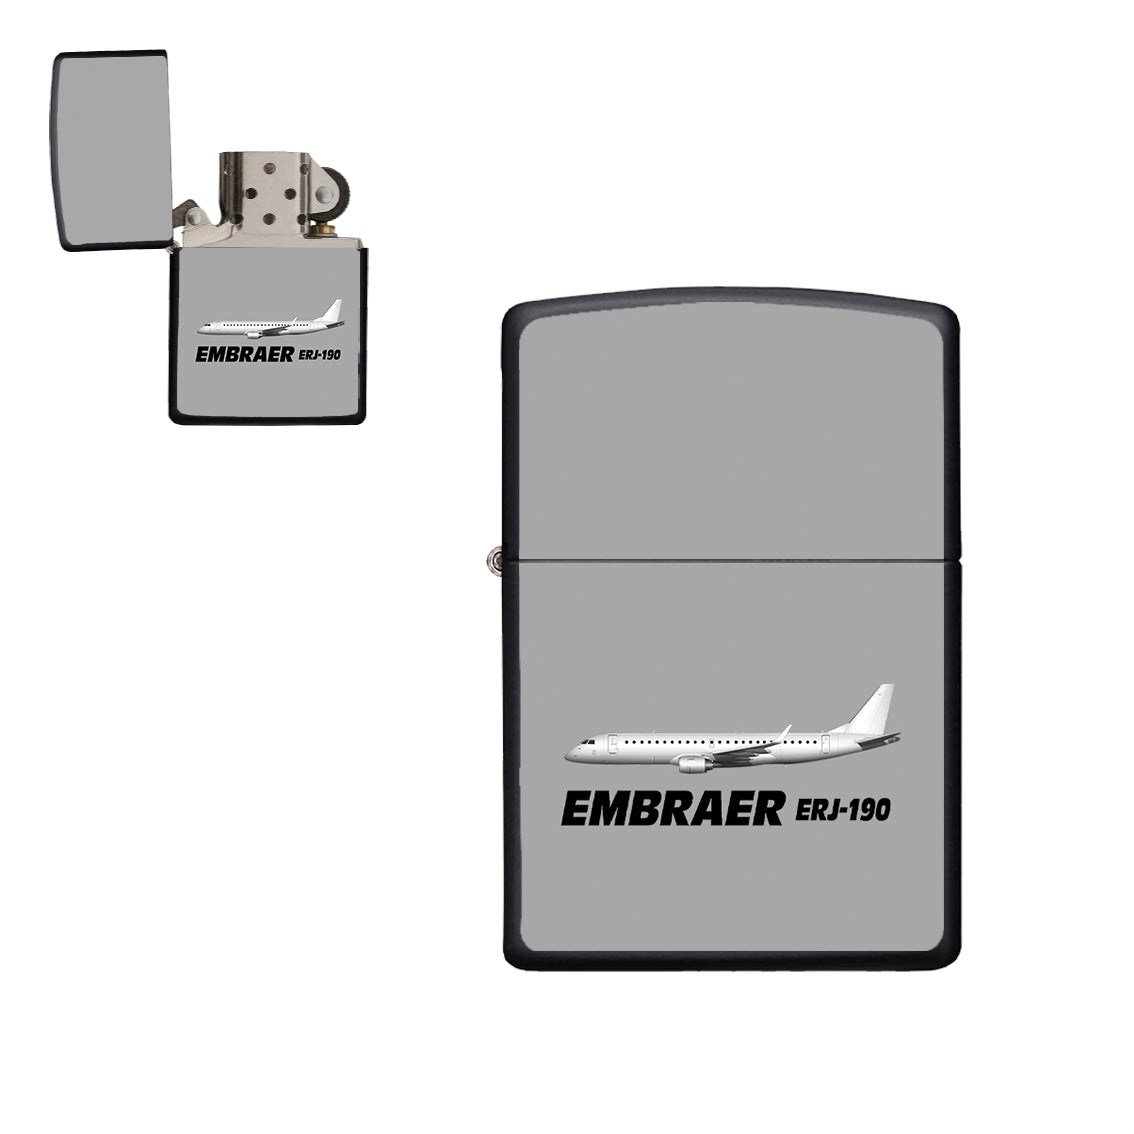 The Embraer ERJ-190 Designed Metal Lighters